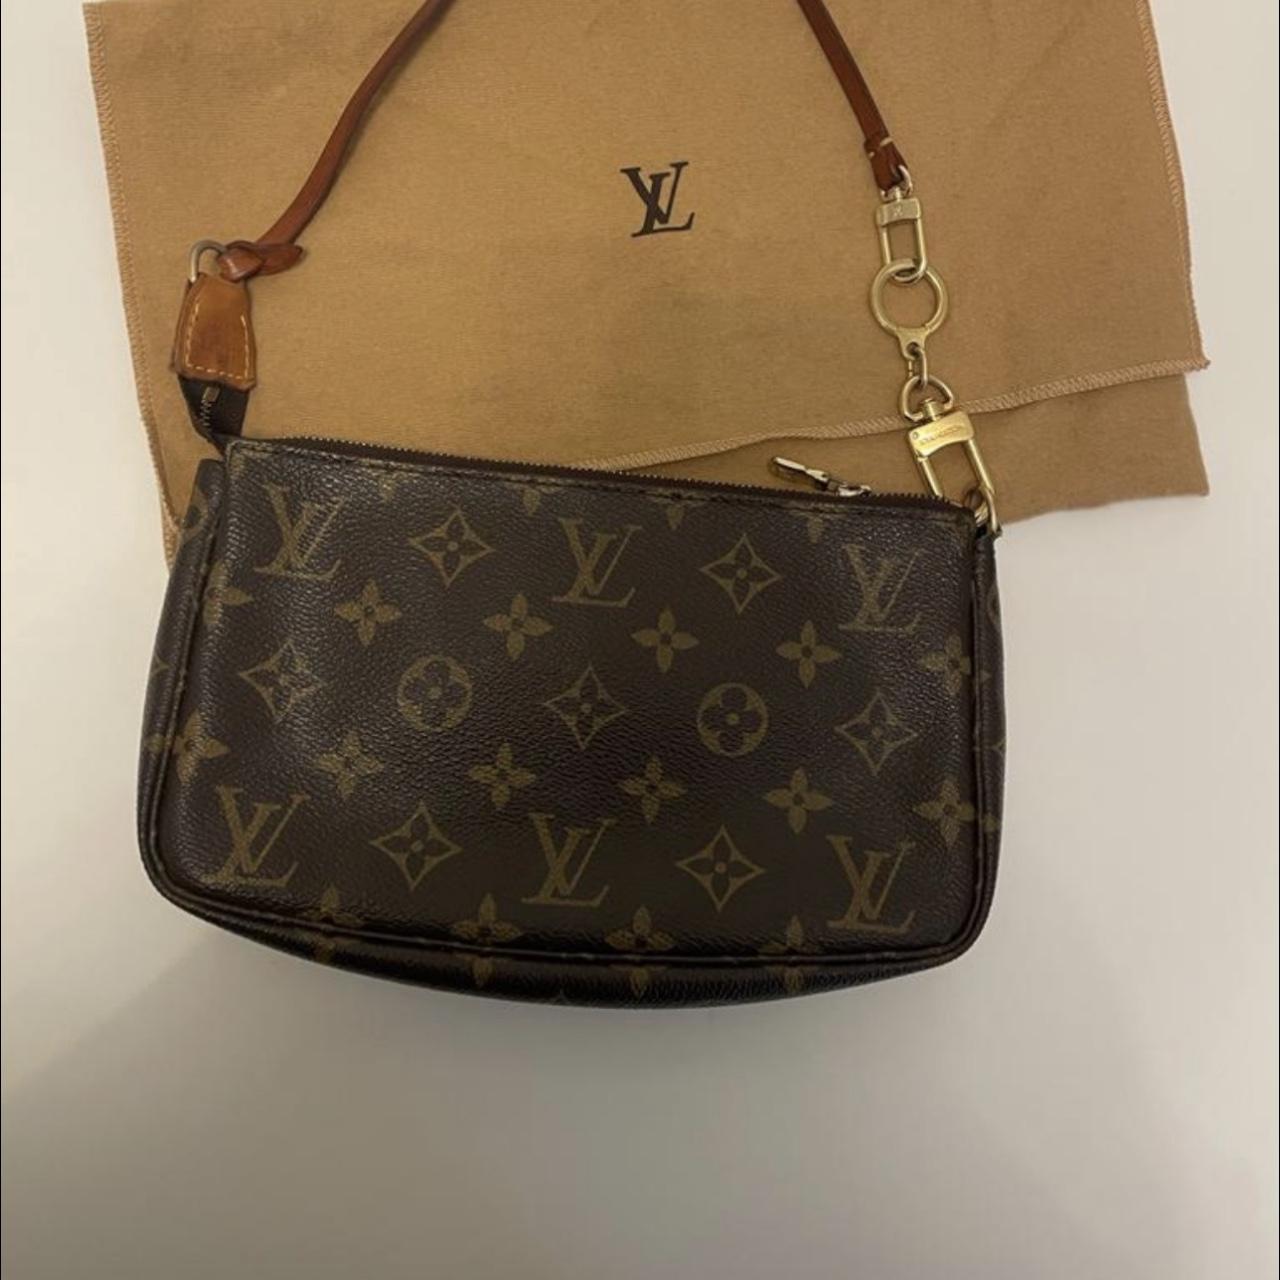 The receipt for the Montana Louis Vuitton handbag as